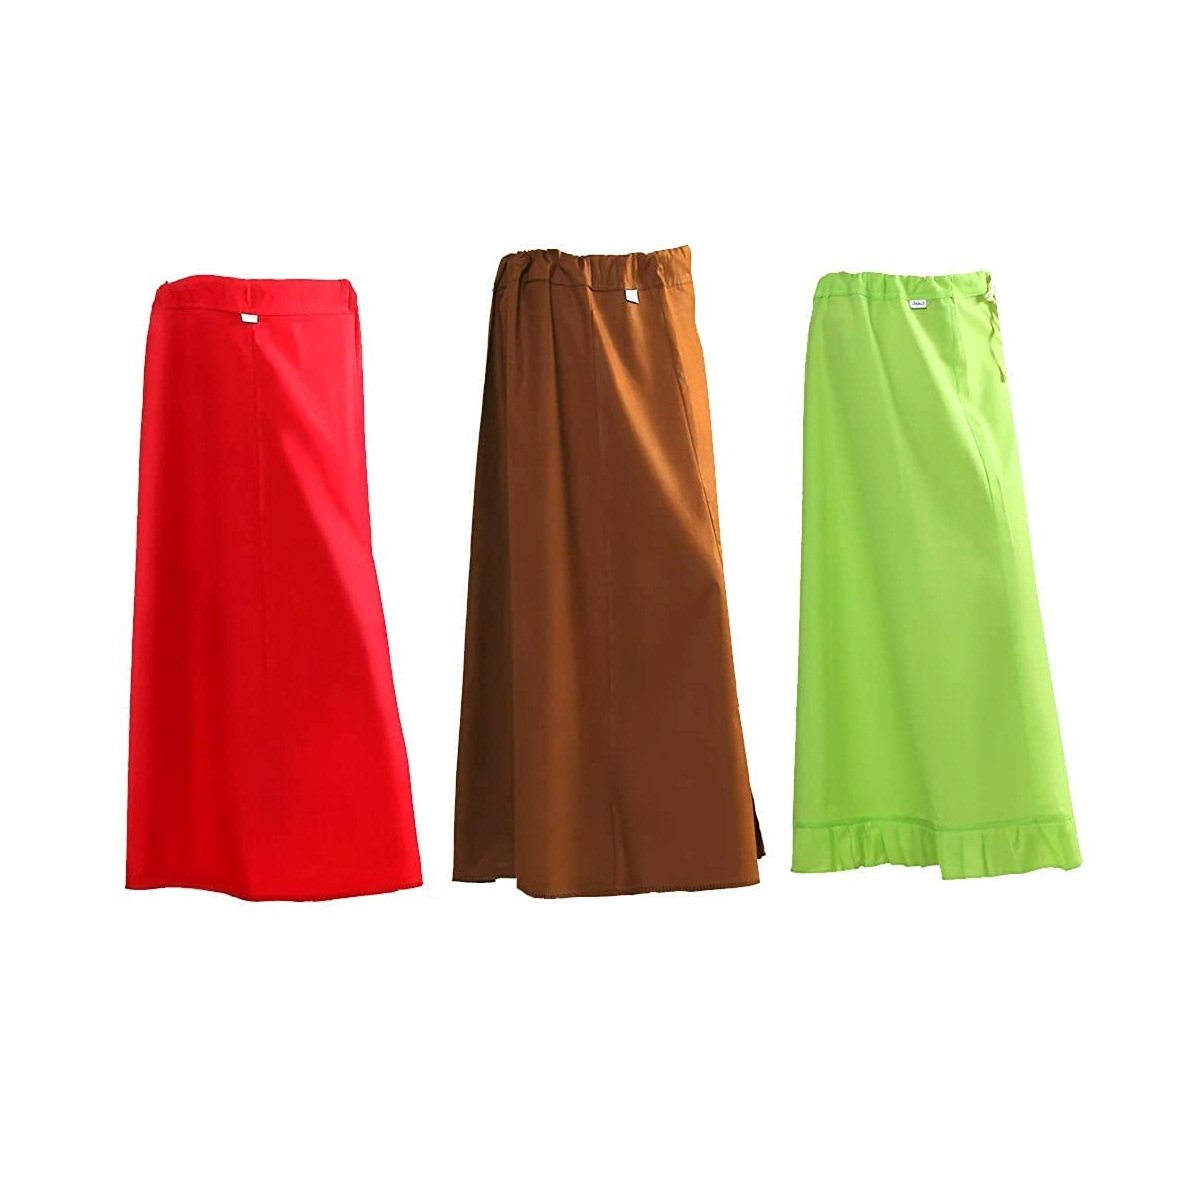 Buy Sari Petticoat, Indian Petticoat, Saree Petticoat